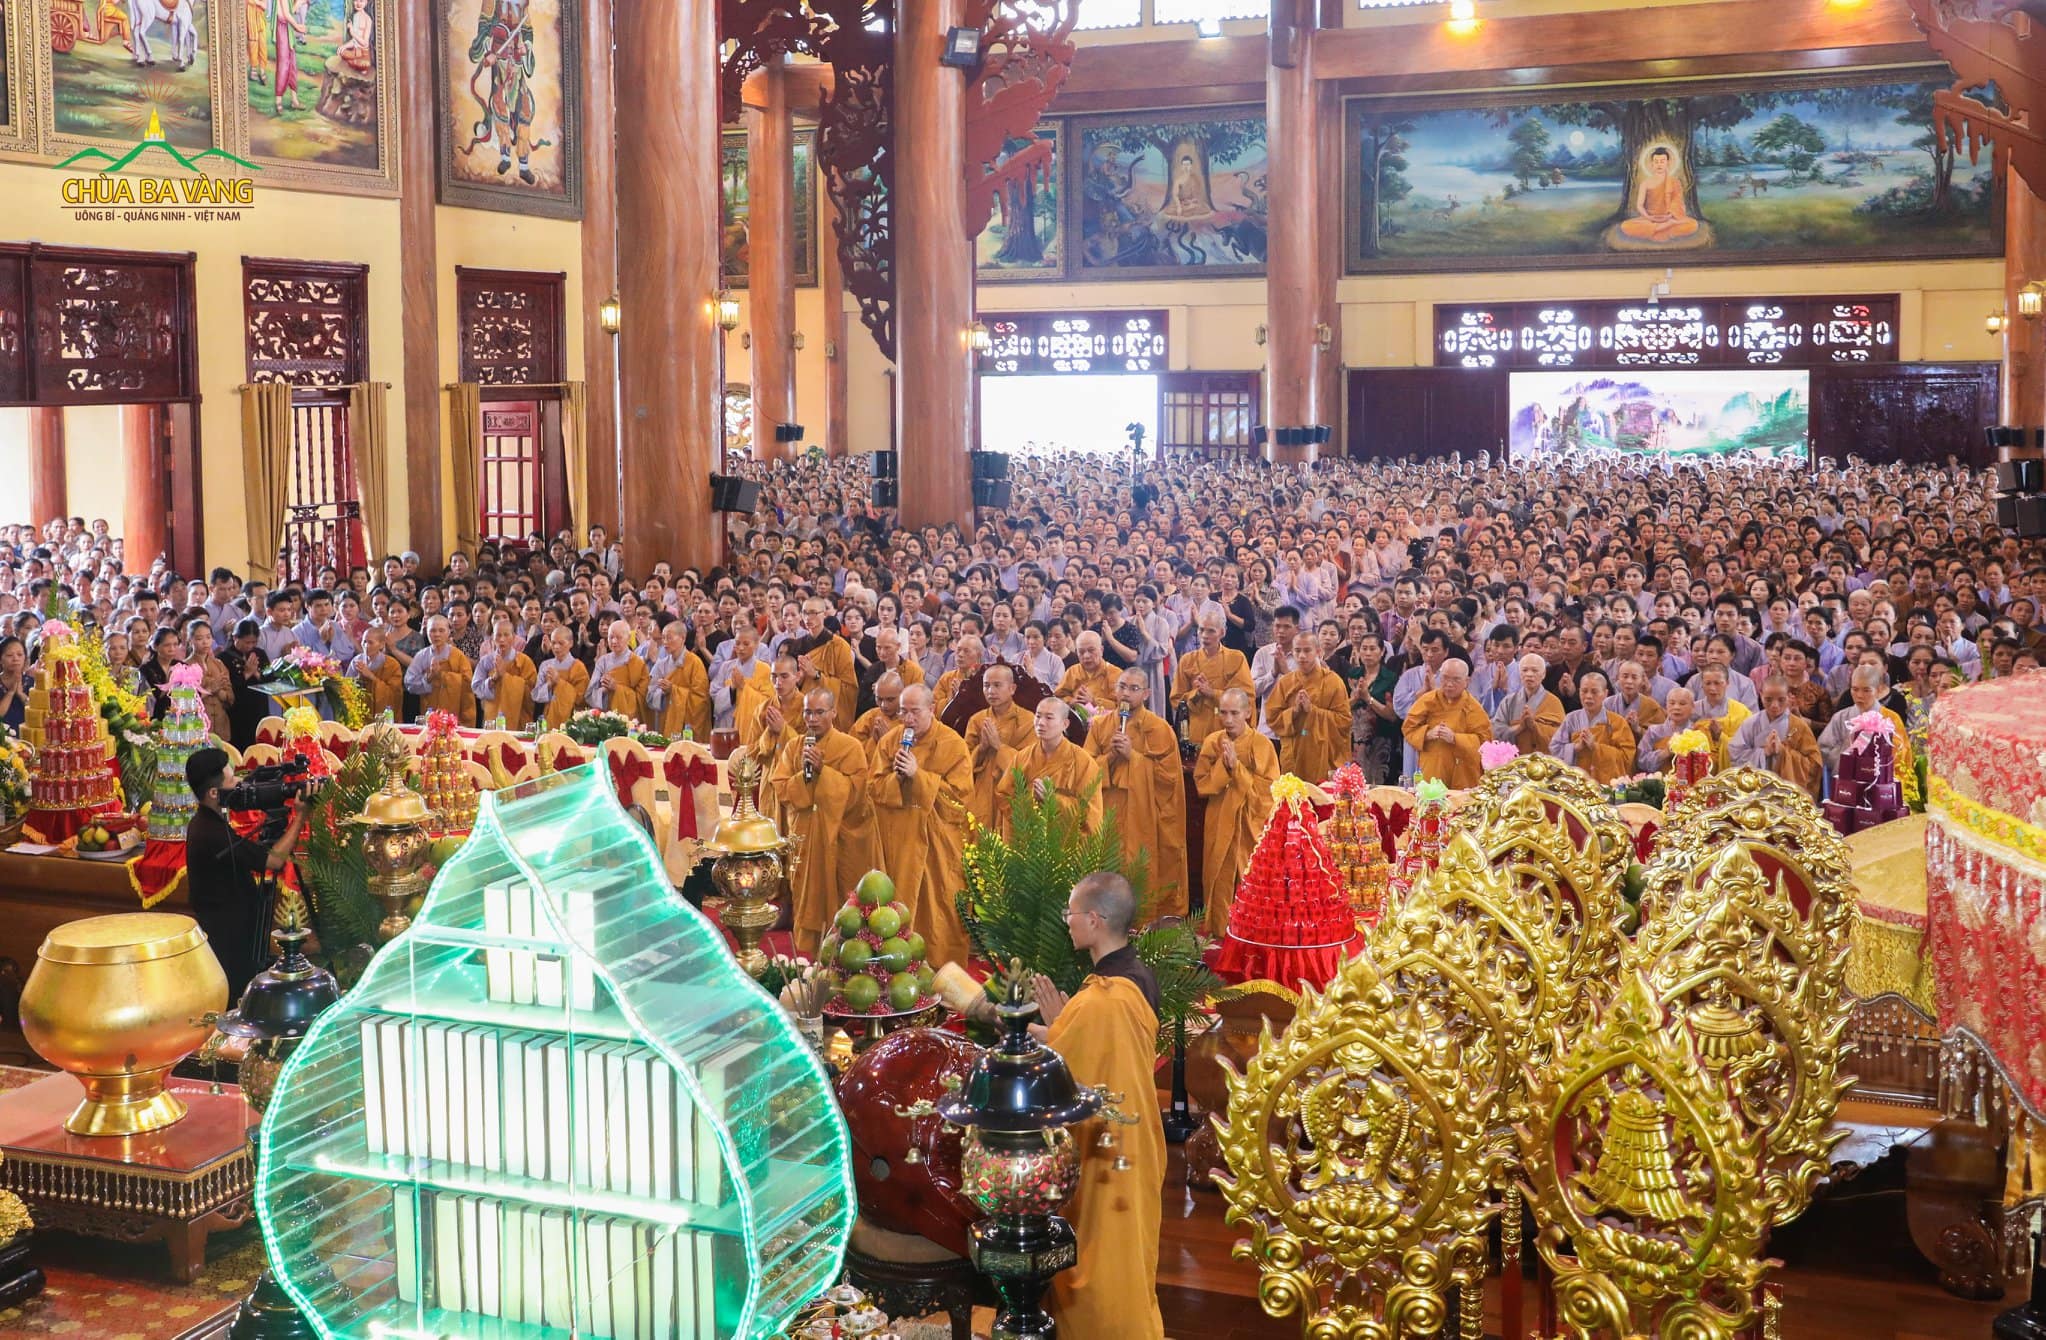 Hơn 25 ngàn người trên khắp mọi miền tổ quốc về tham gia lễ Phát Tâm Bồ Đề tại chùa Ba Vàng ngày 19/6